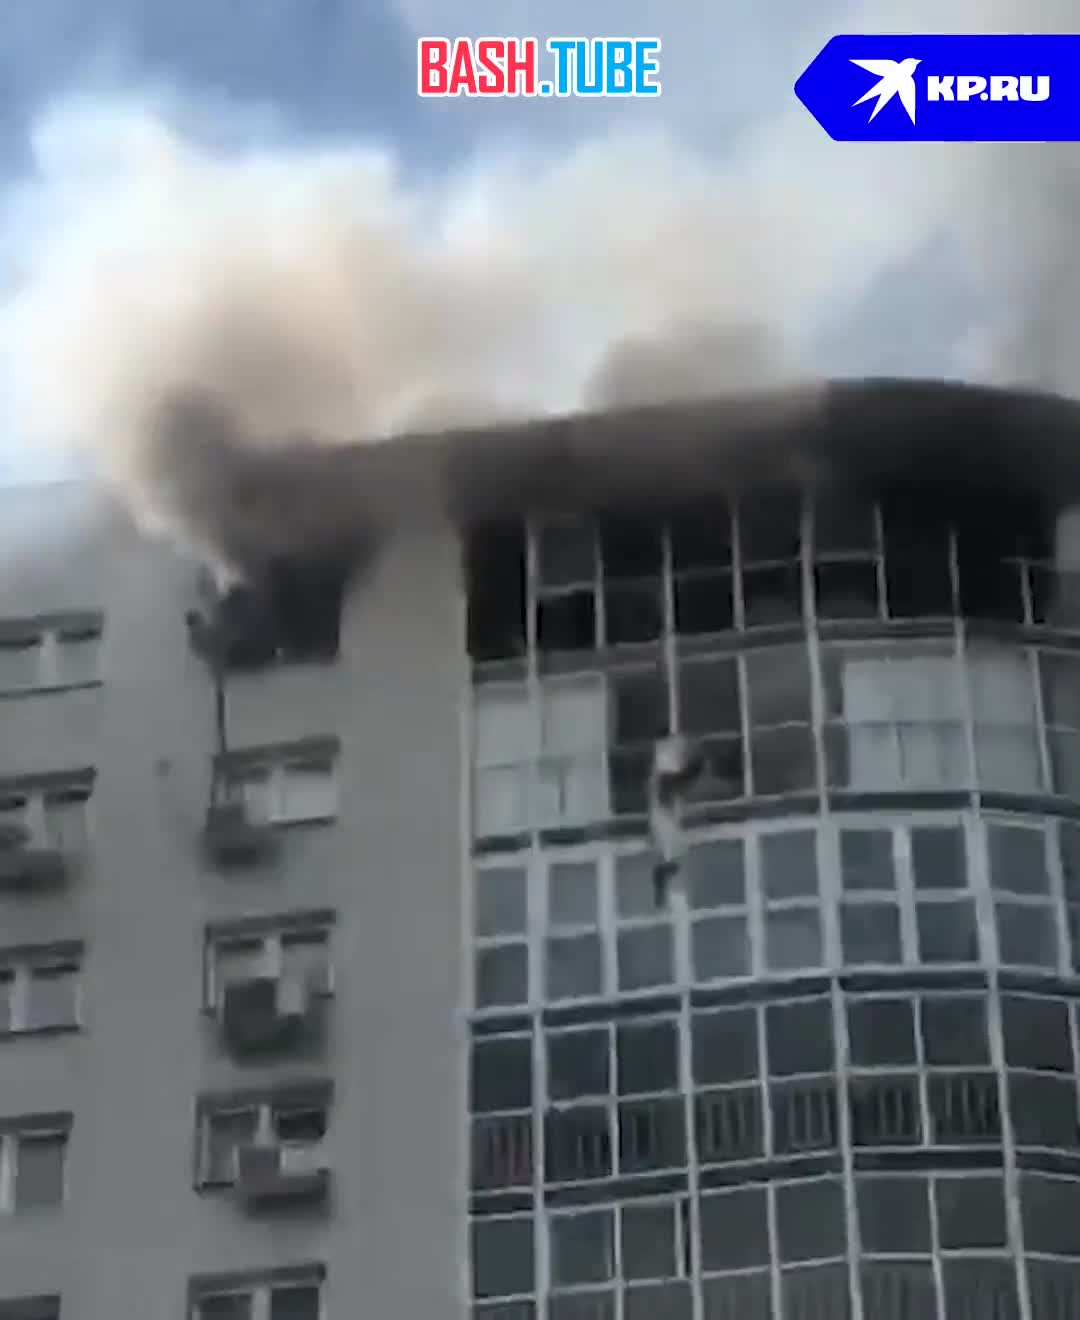  Второго мужчину, сидевшего на подоконнике, спасаясь от пожара в Екатеринбурге, спасли